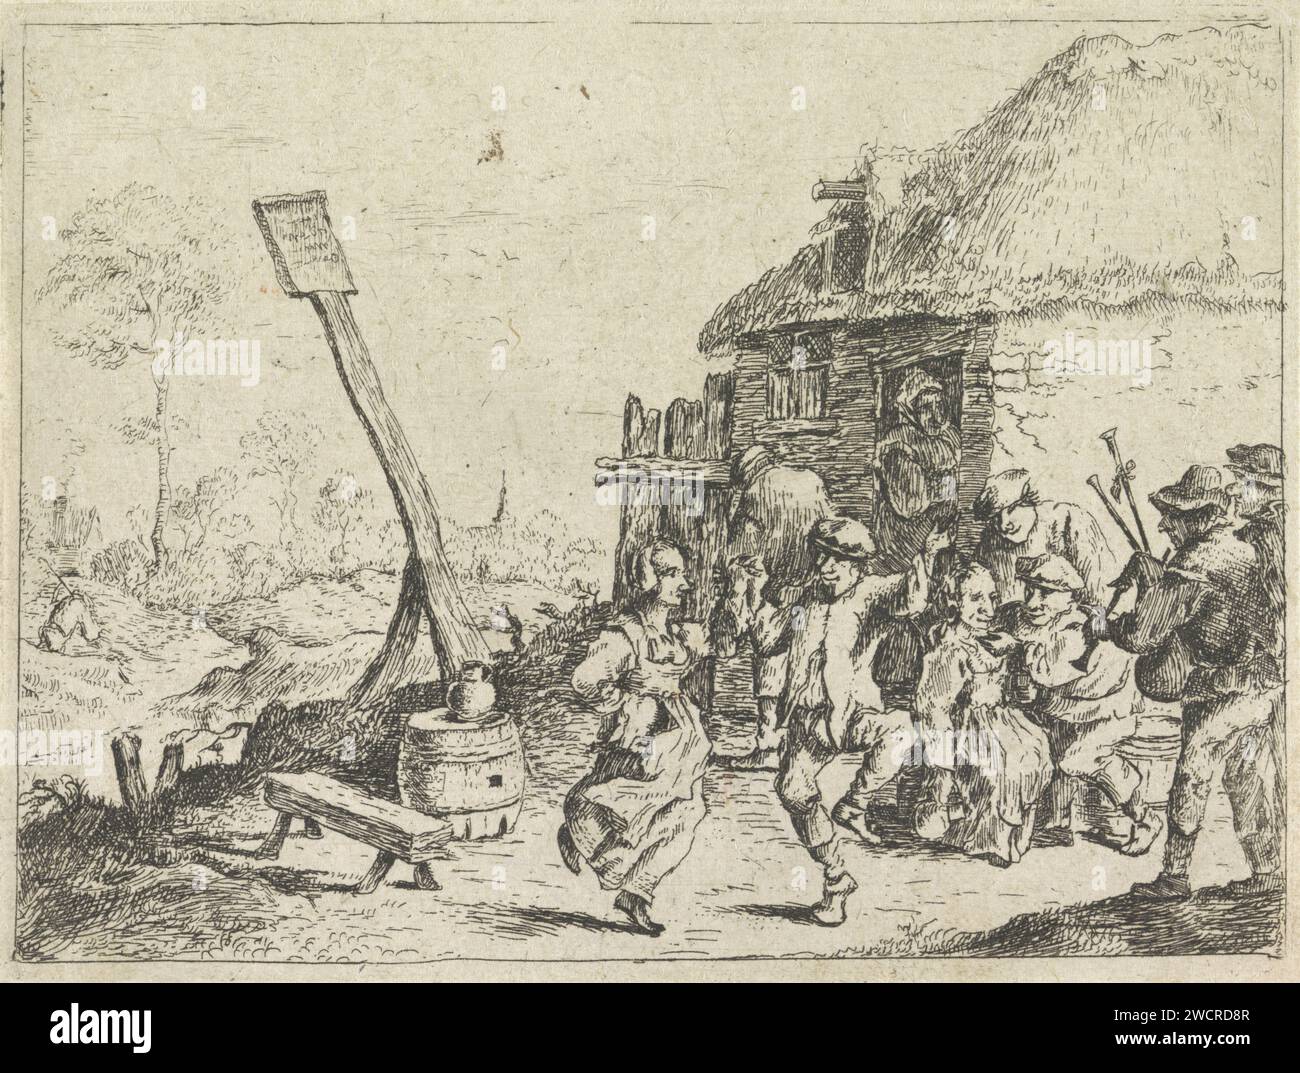 Dance for the inn, Anonym, nach David Teniers (II), 1626 - 1740 Drucken Sie einige Tänze für ein gasthaus zur Musik eines Dudelsackspielers. Die trinkenden Bauern sind vor dem gasthaus. Papierätzung Dudelsack, Musette. Ein Paar tanzt, Mann und Frau tanzt als Paar Stockfoto